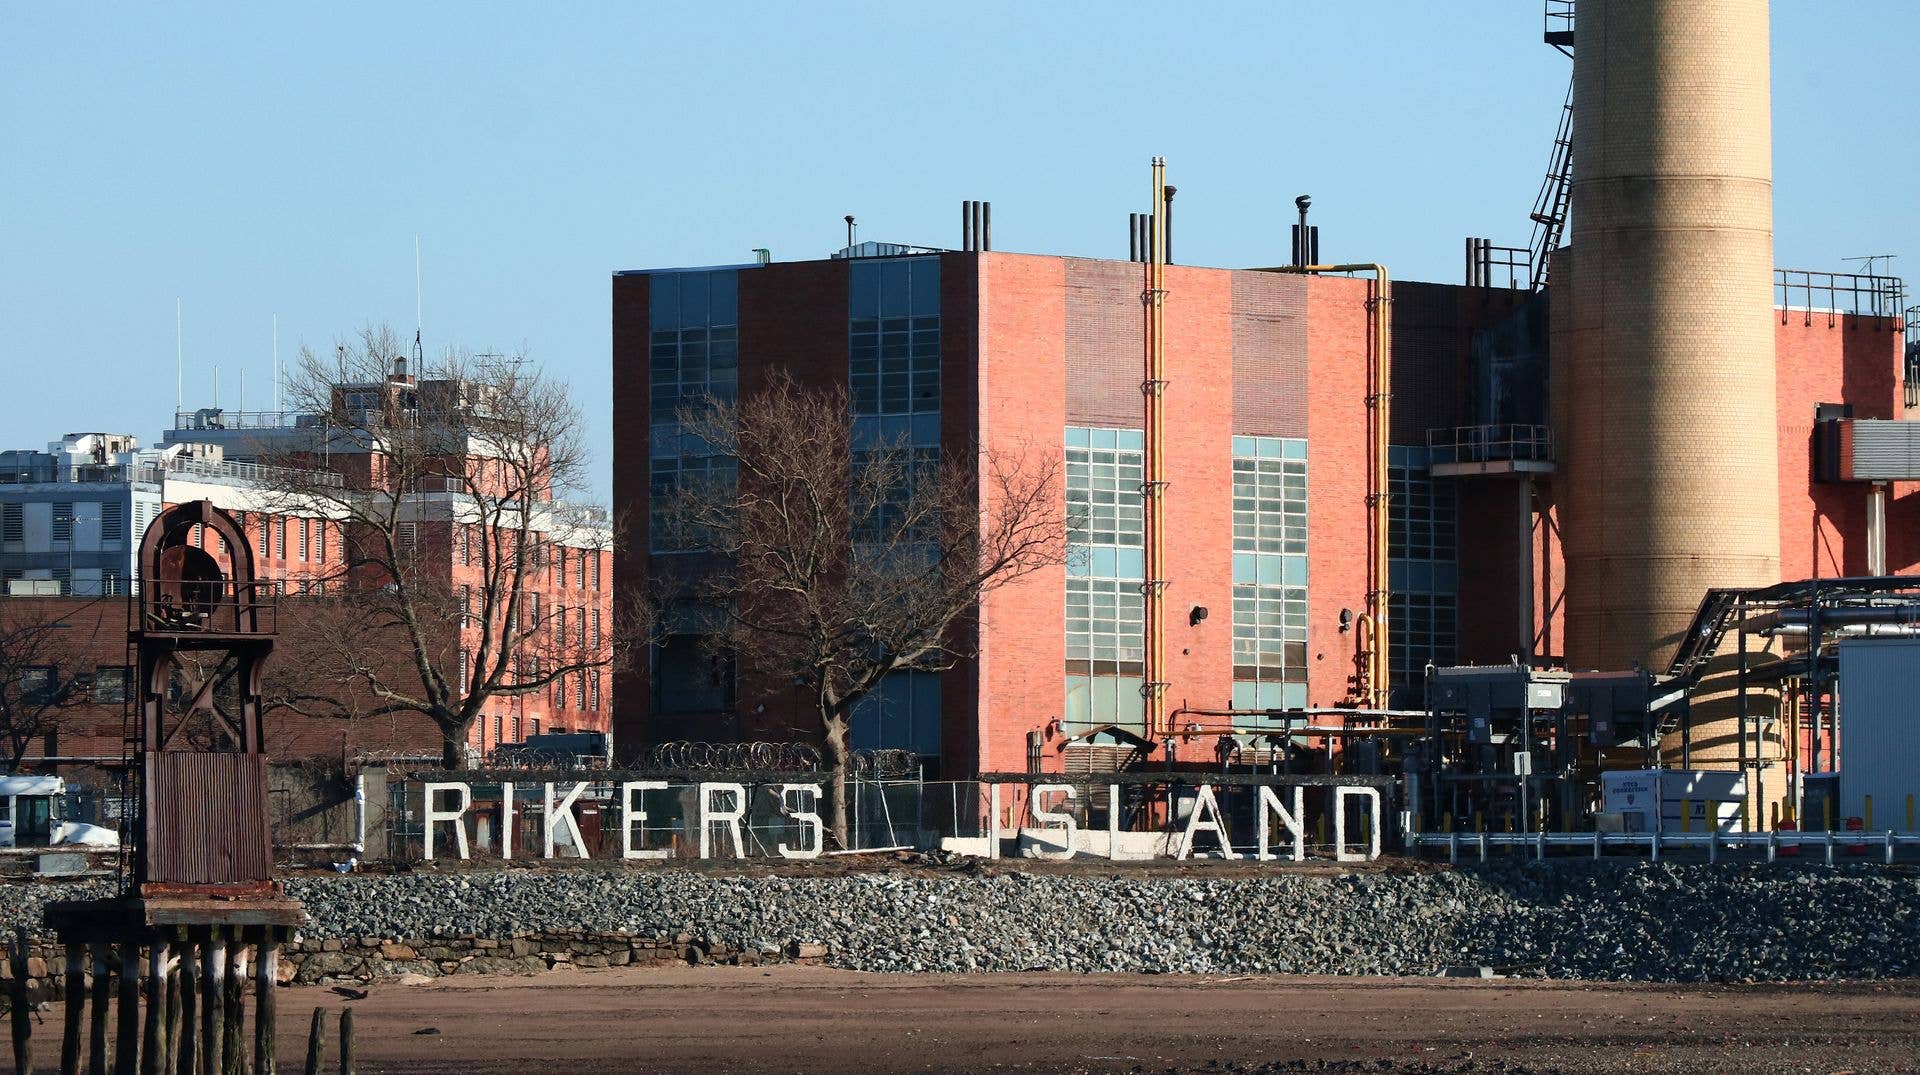 Riker's Island as seen in 2021